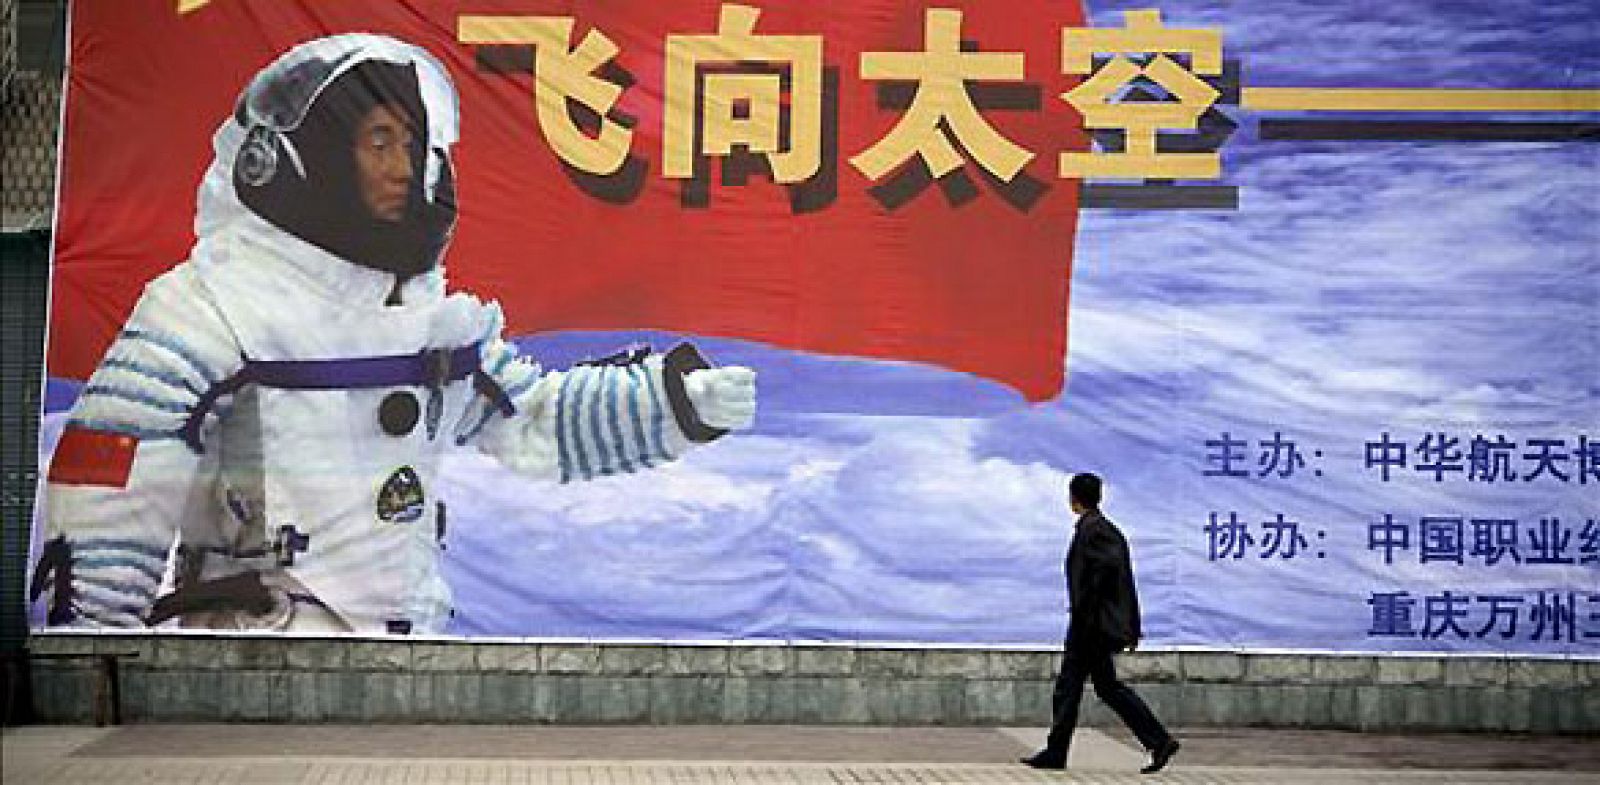 El lanzamiento de la sonda coincide con la celebración del aniversario de la República Popular China